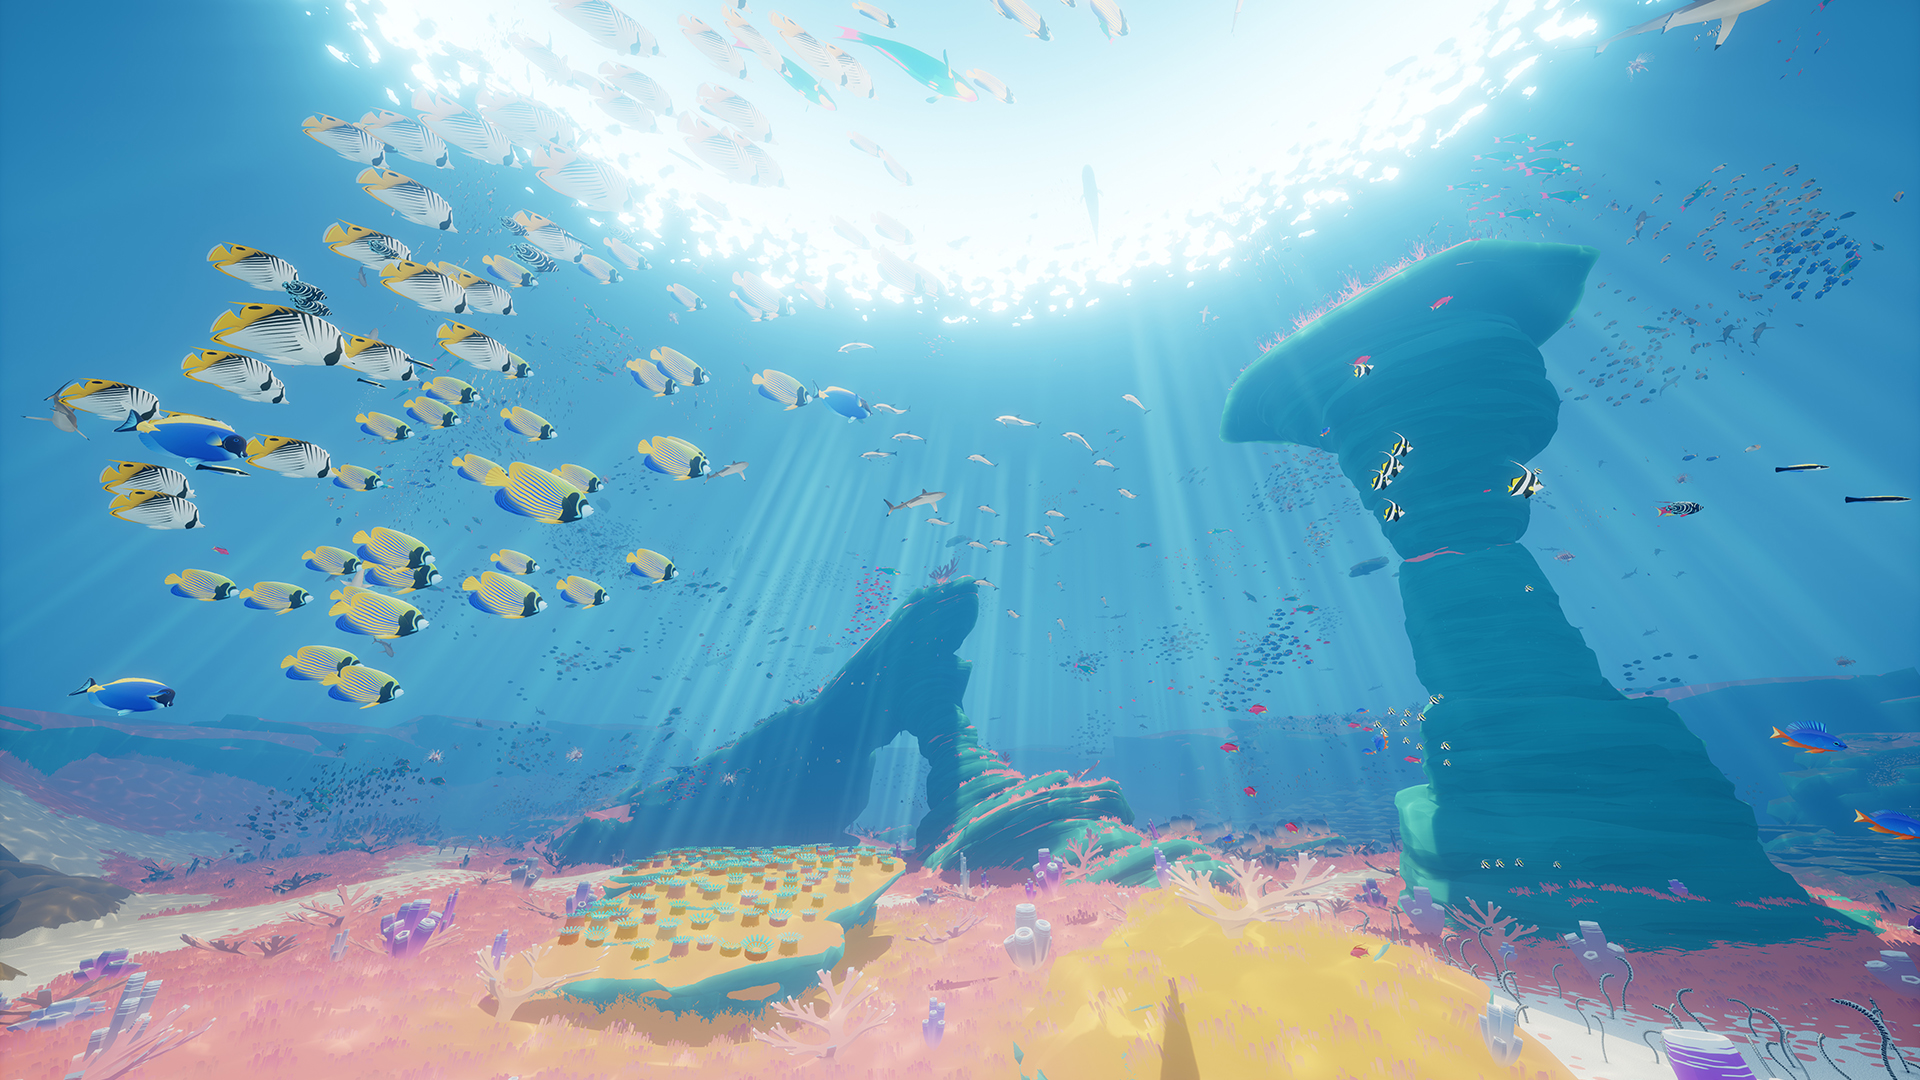 深海探索アドベンチャーゲーム『ABZÛ』のPC版がEpic Gamesストアで無料配布へ。『風ノ旅ビト』クリエイターが手掛けた作品_004